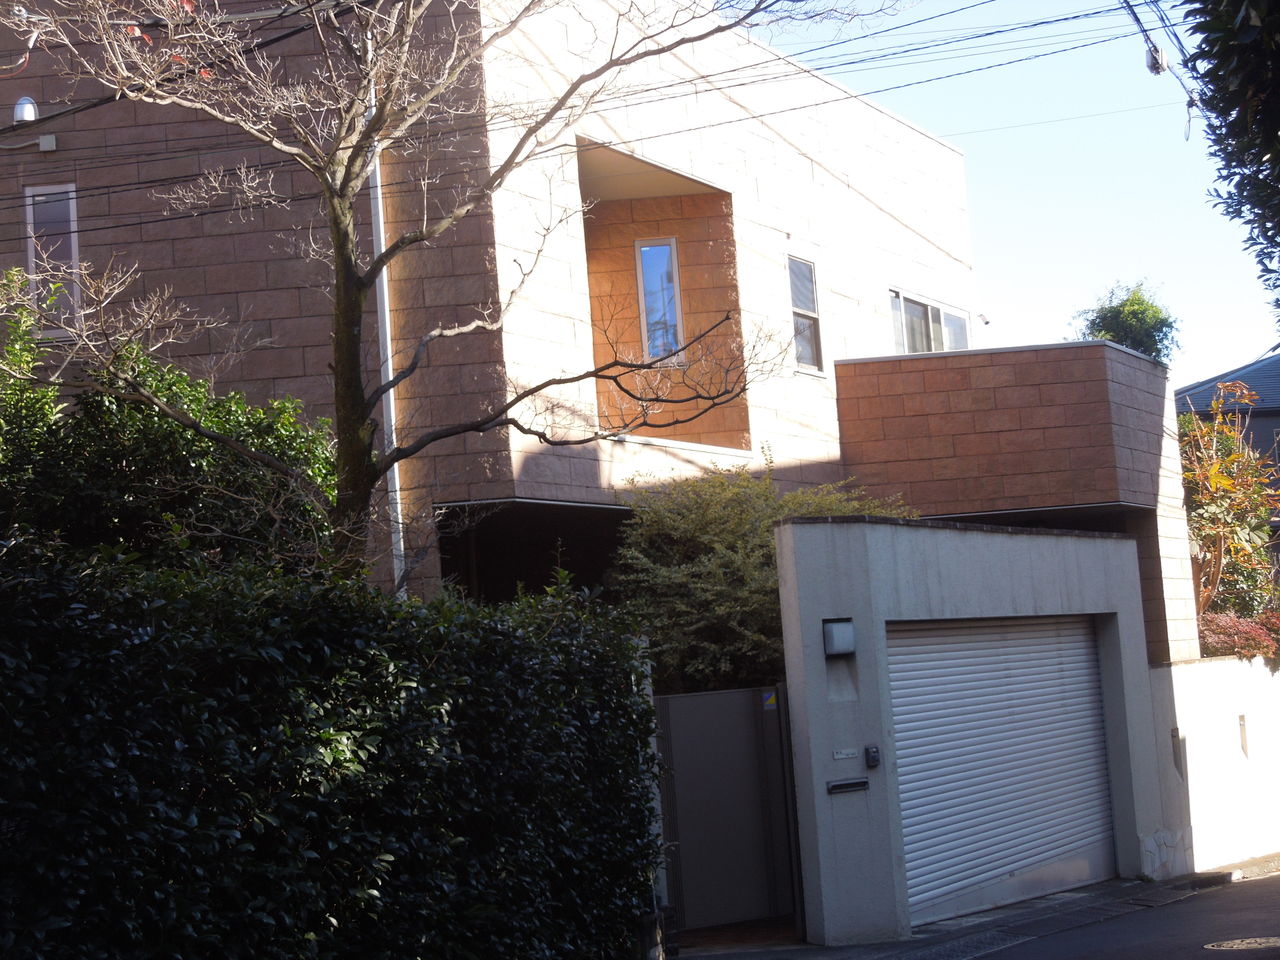 広尾の狭い道に豪邸が現れました 東京都内の豪邸探索ブログ